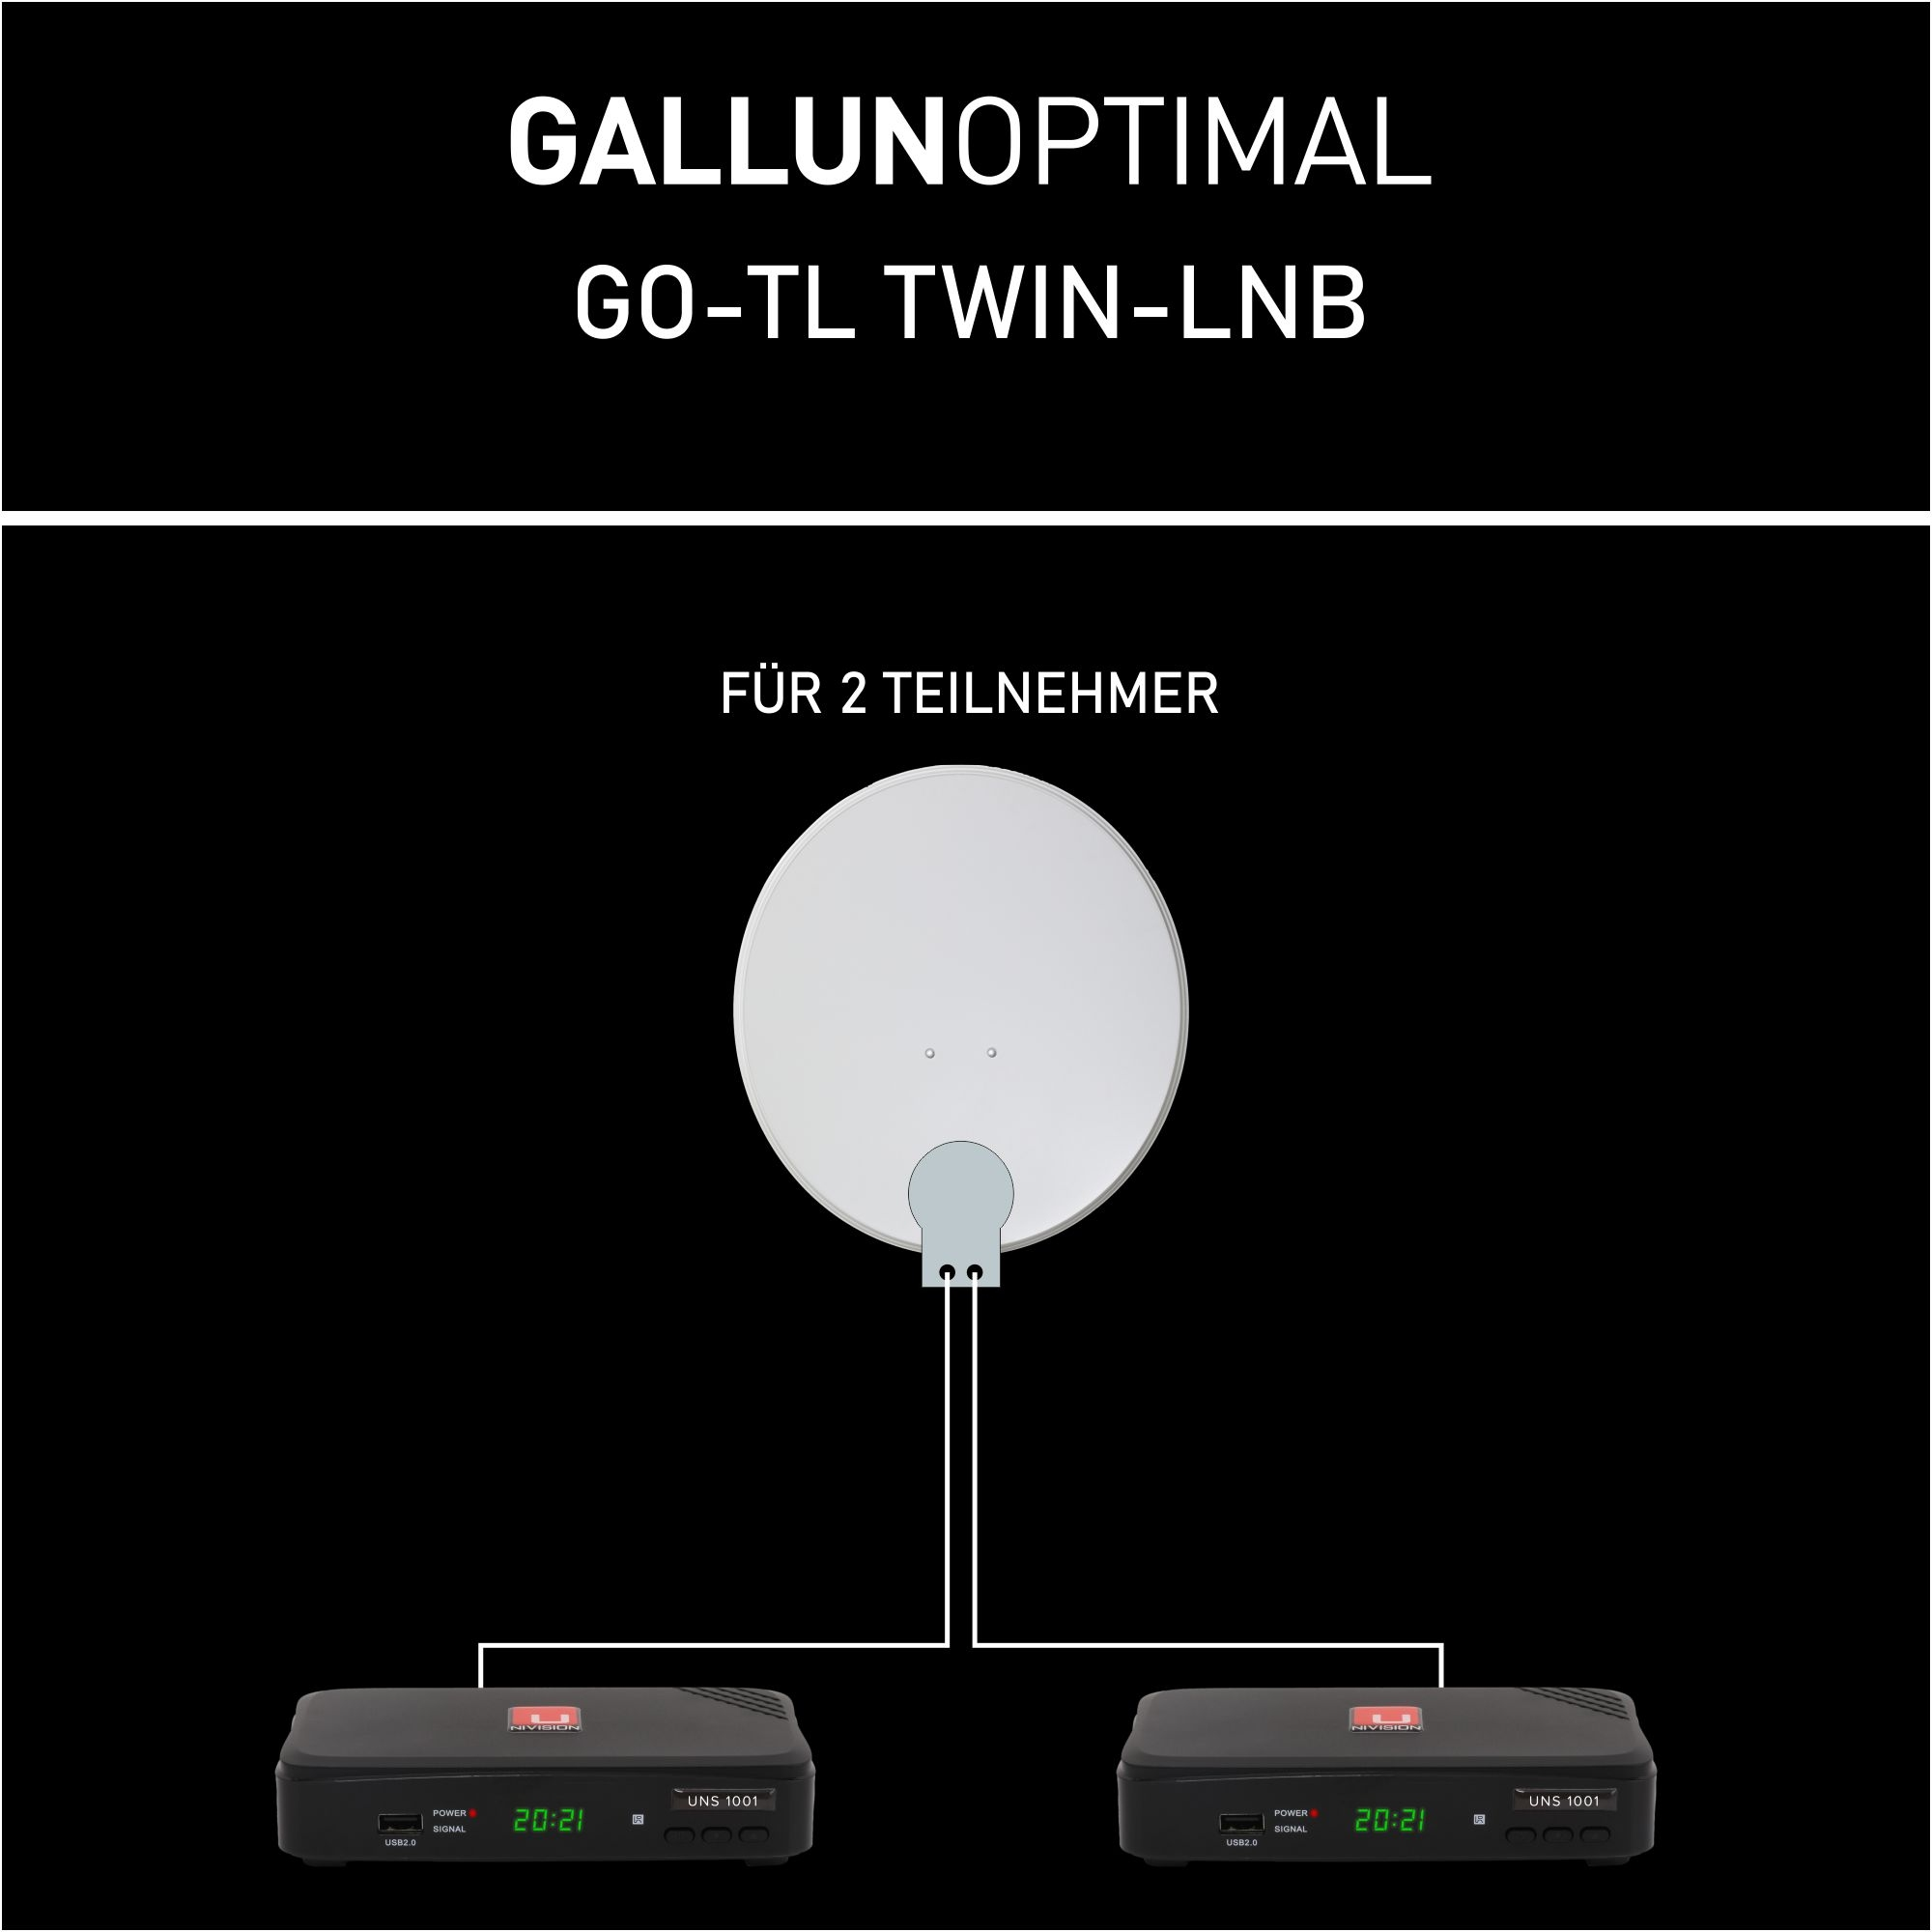 GALLUNOPTIMAL Twin LNB Twin-LNB